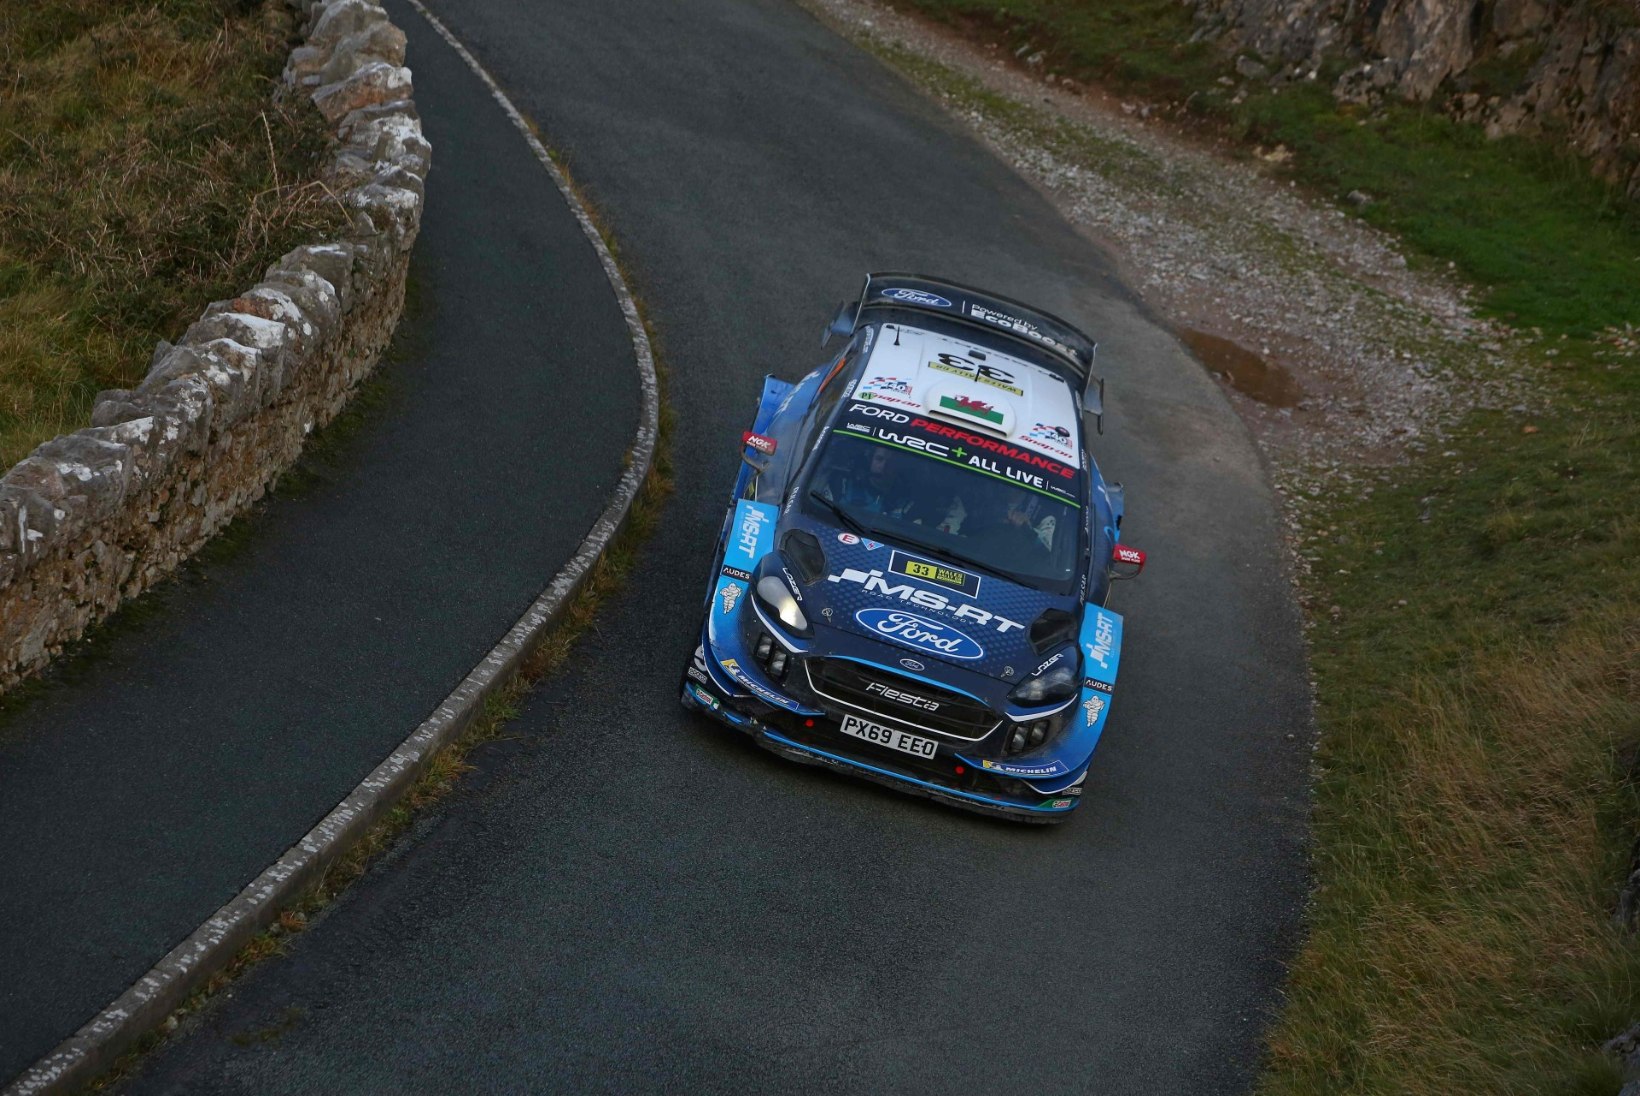 KARM: üks WRC tipptiim võib Eestis toimuvalt MM-rallilt eemale jääda